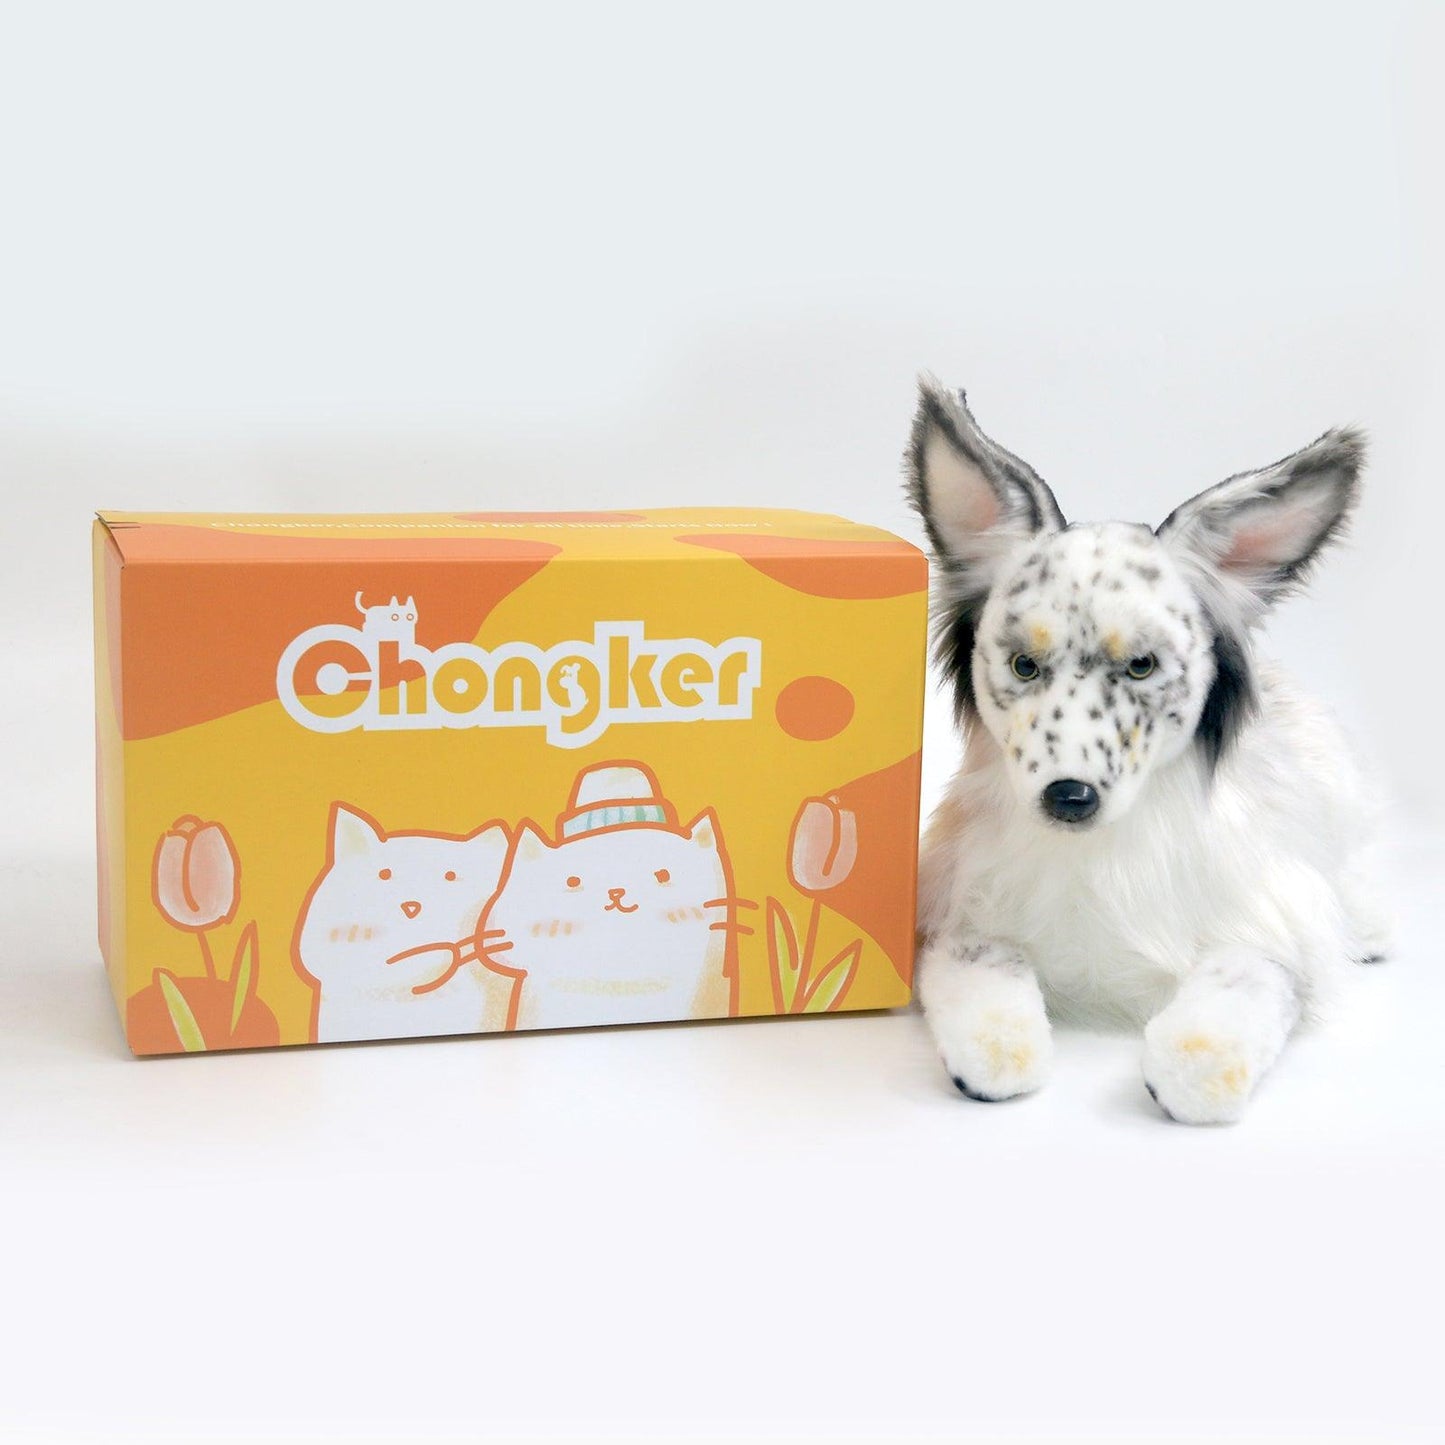 No.2 Spotted dog - Chongker